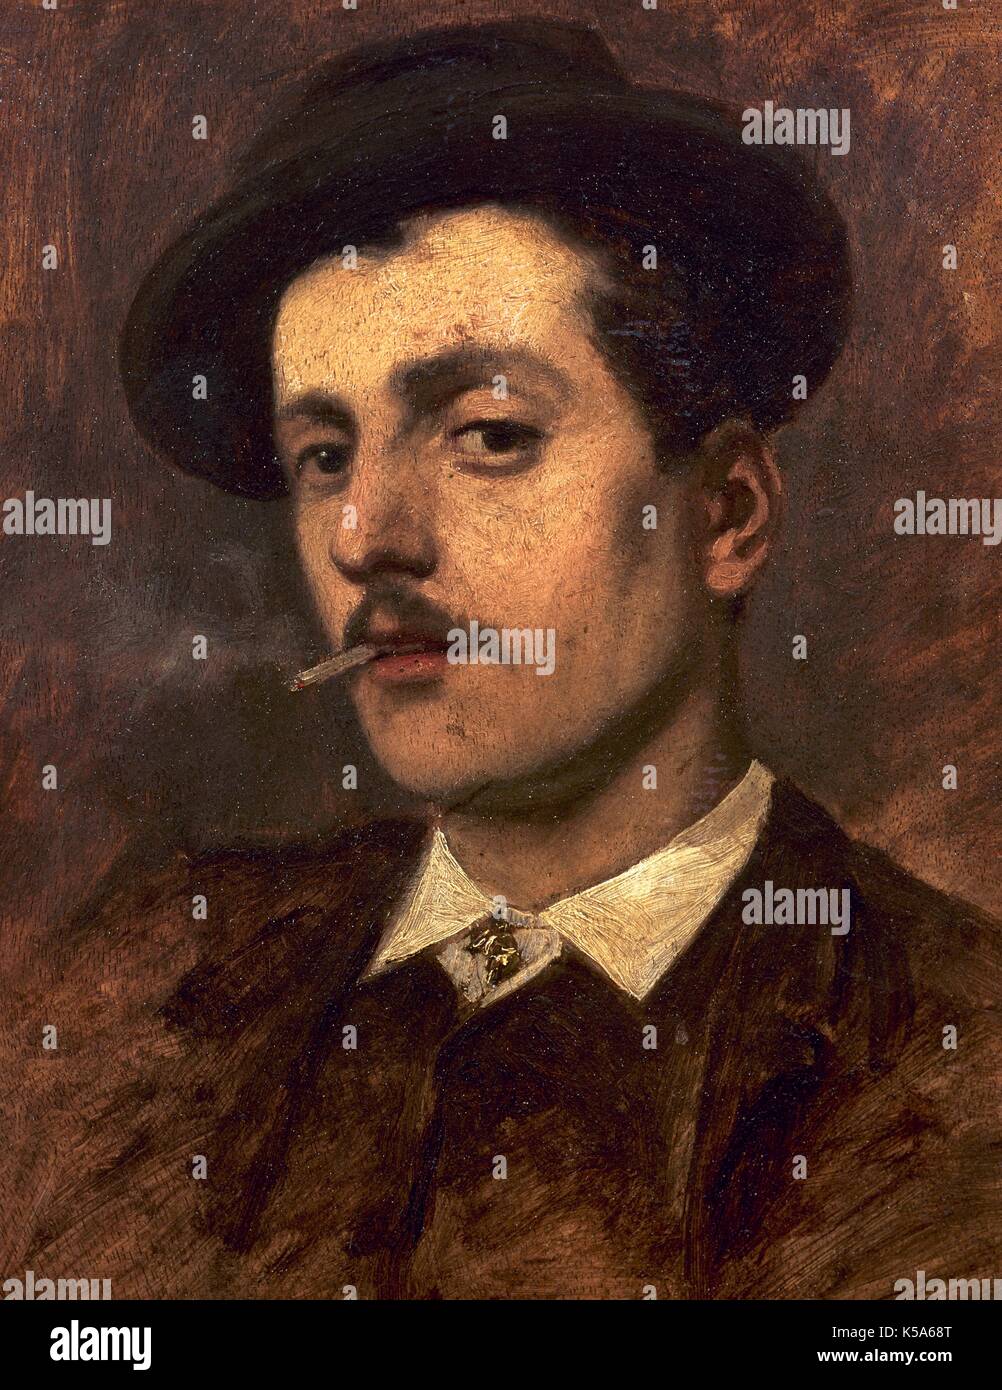 Giacomo Puccini (1858-1924). Compositor italiano. Óleo sobre lienzo. Museo Villa Puccini (Torre del Lago Puccini, Italia). Foto de stock